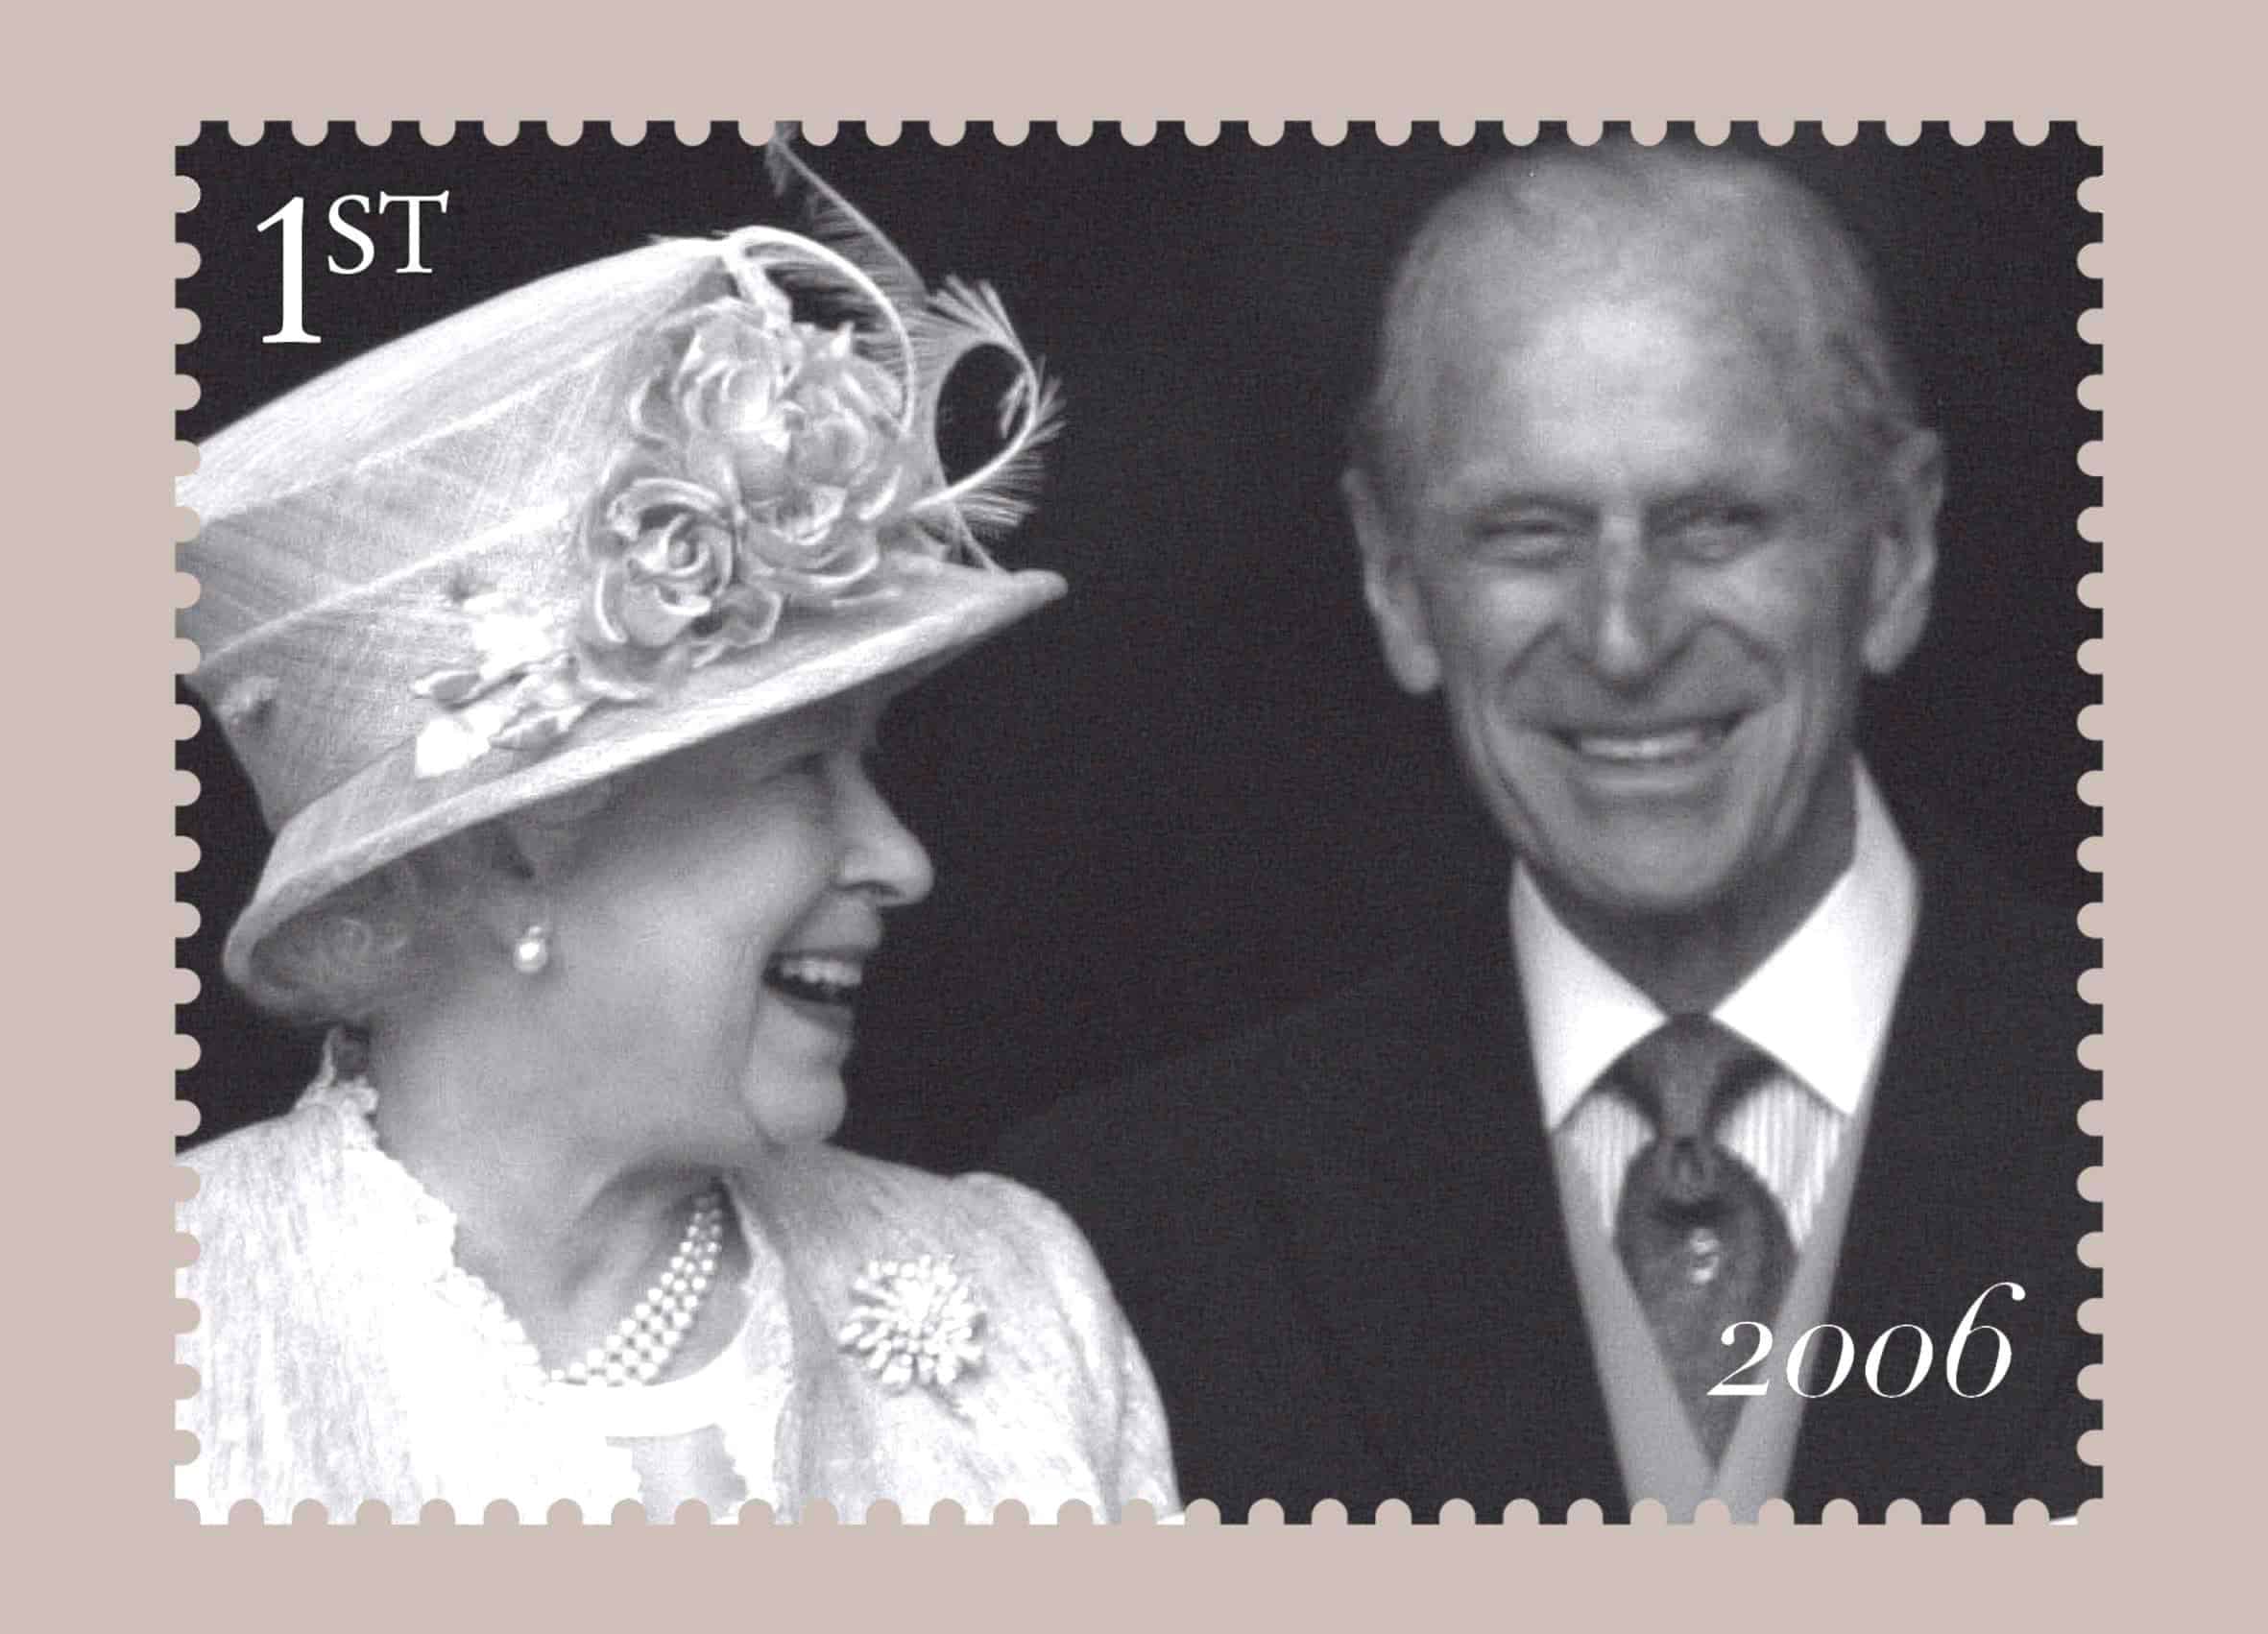 Foto cedida por Correos del Reino Unido para conmemorar el 60 aniversario de la boda de la entonces princesa Isabel y el teniente Mounbatten.